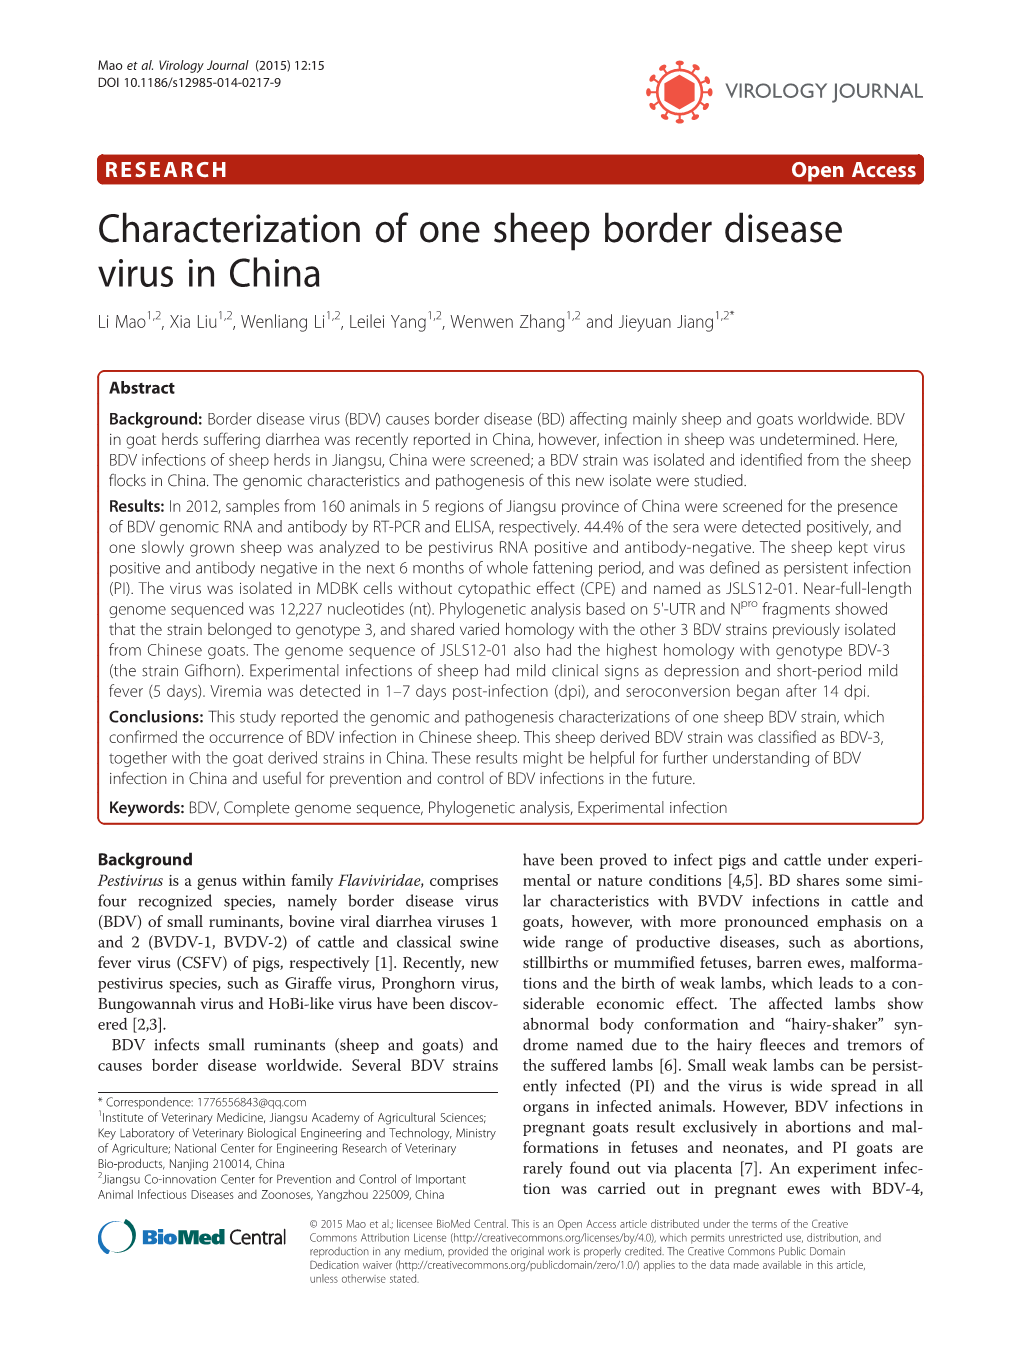 Characterization of One Sheep Border Disease Virus in China Li Mao1,2, Xia Liu1,2, Wenliang Li1,2, Leilei Yang1,2, Wenwen Zhang1,2 and Jieyuan Jiang1,2*